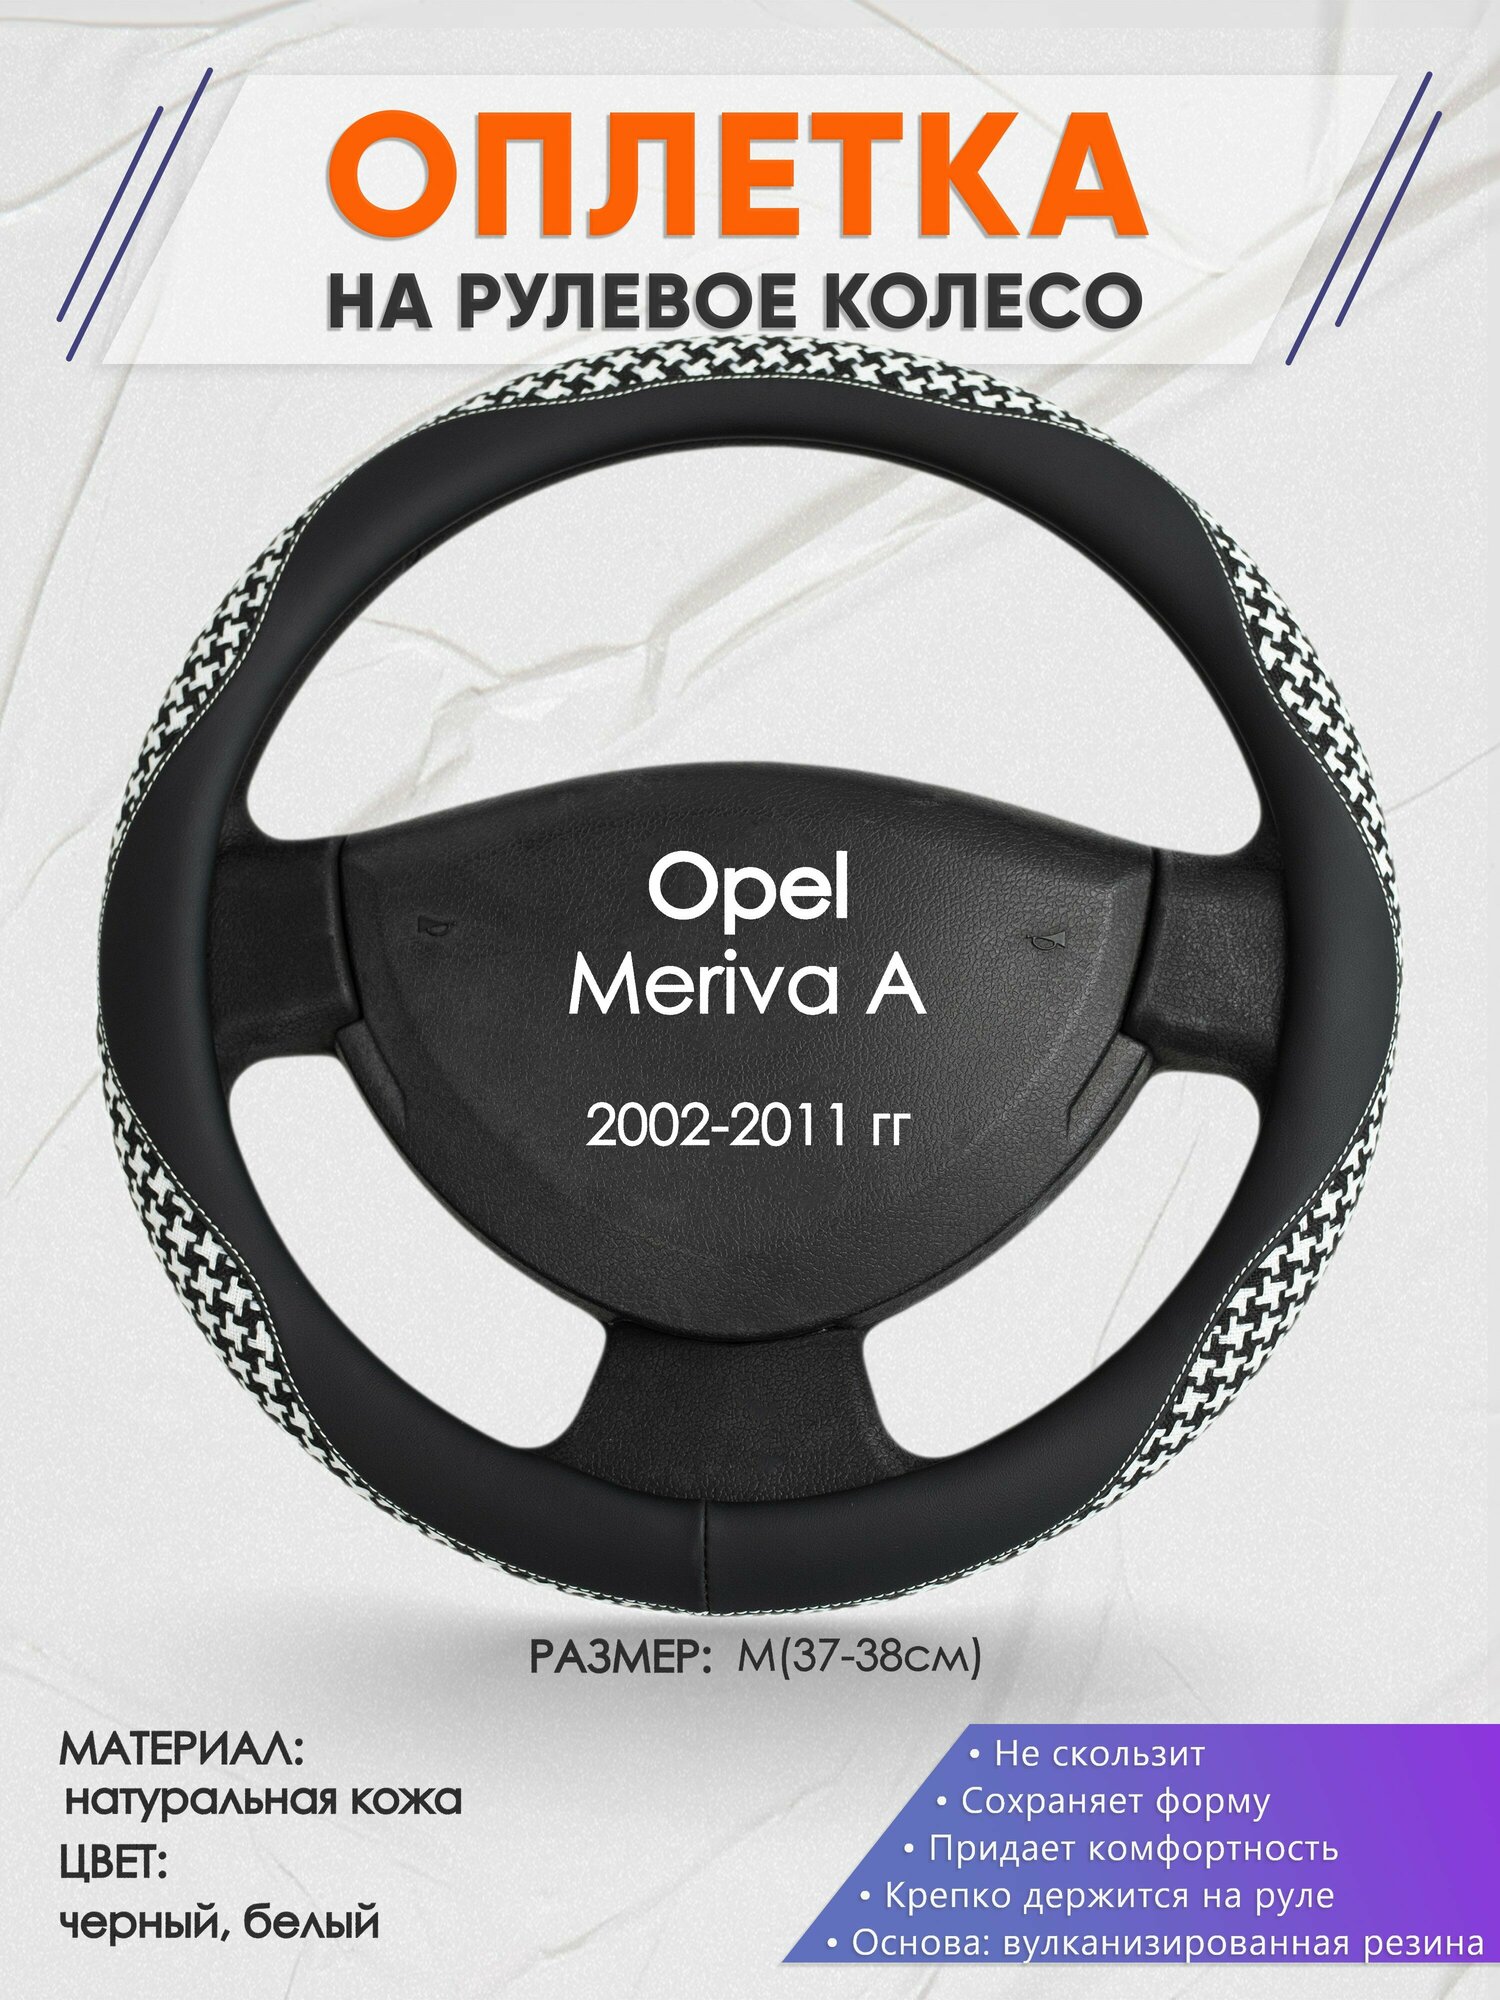 Оплетка на руль для Opel Meriva A(Опель Мерива А) 2002-2011, M(37-38см), Натуральная кожа 21